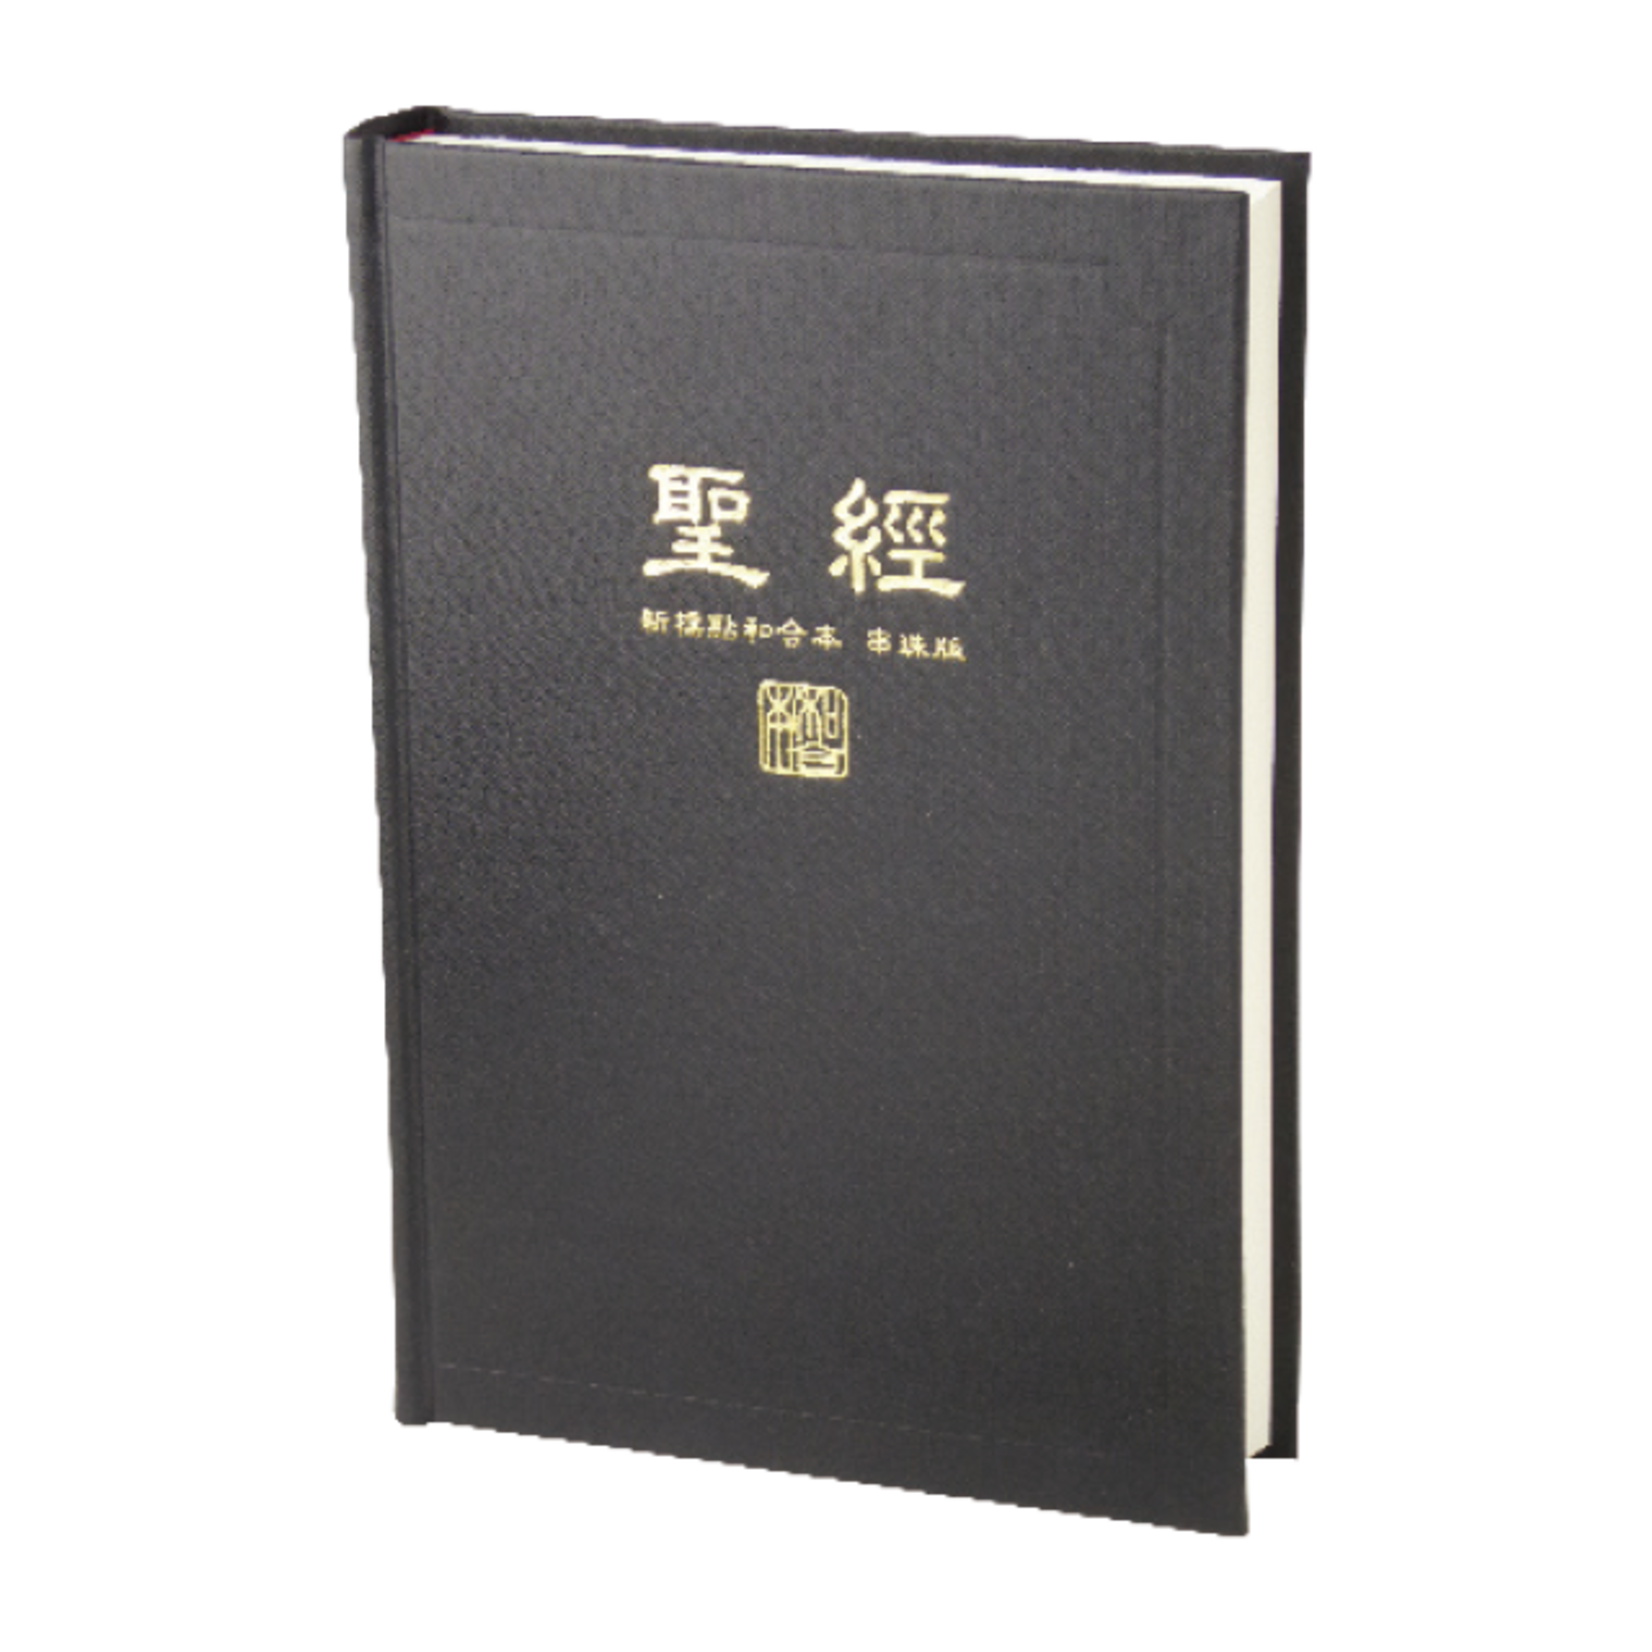 台灣聖經公會 The Bible Society in Taiwan 聖經．新標點和合本．神版．橫排型．串珠．黑色硬面白邊